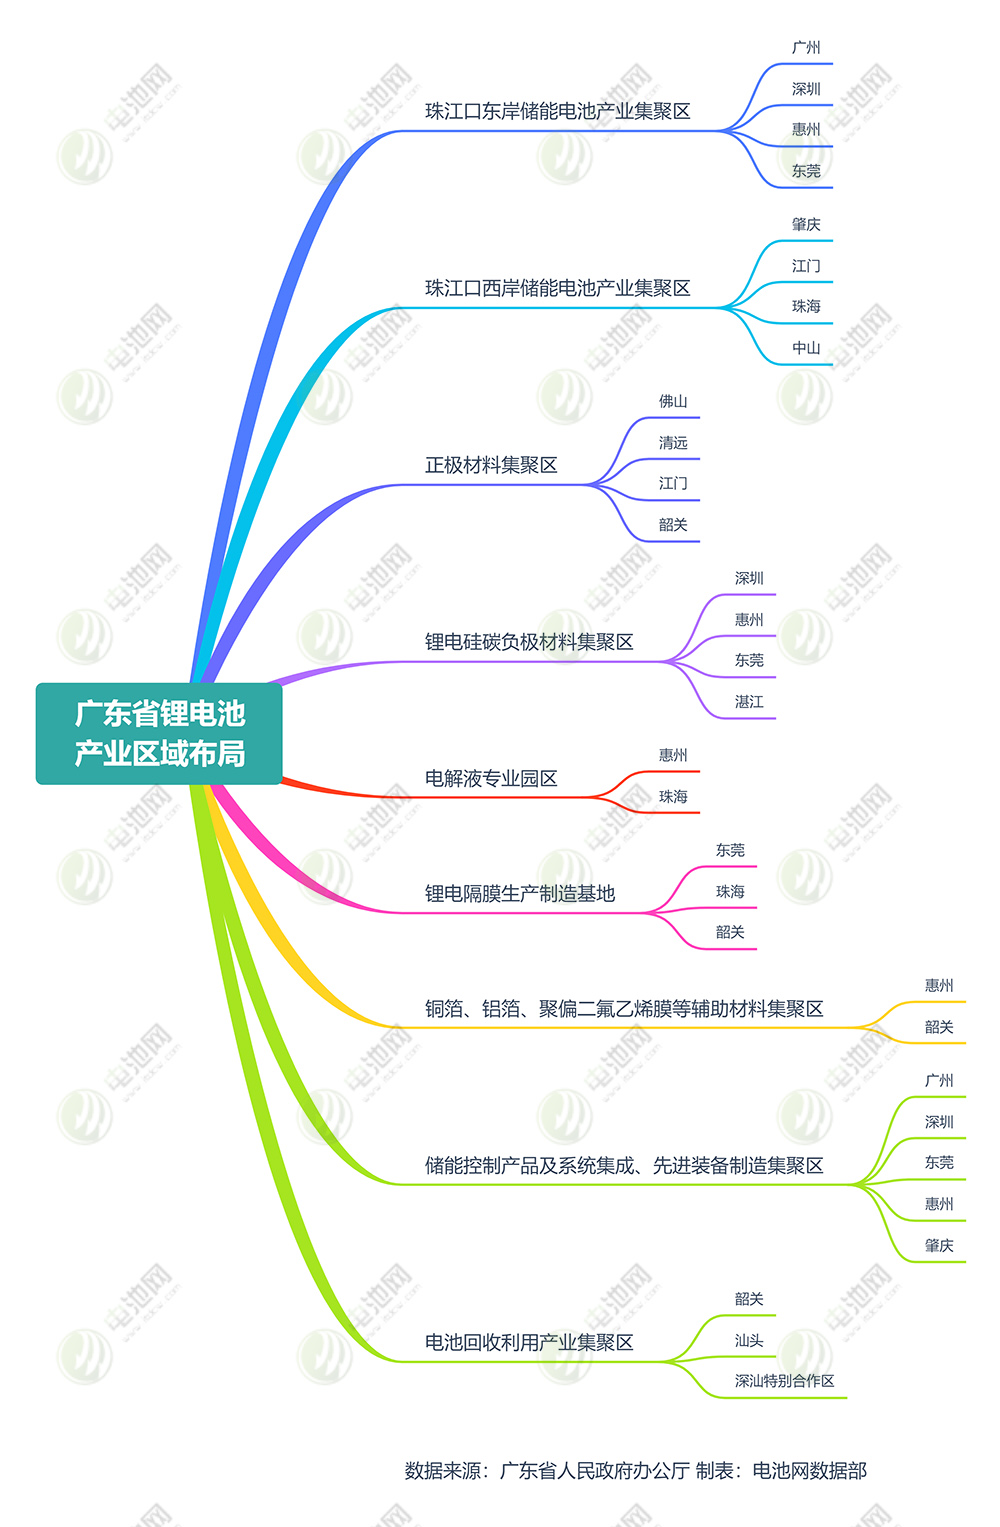 广东省锂电池产业区域布局